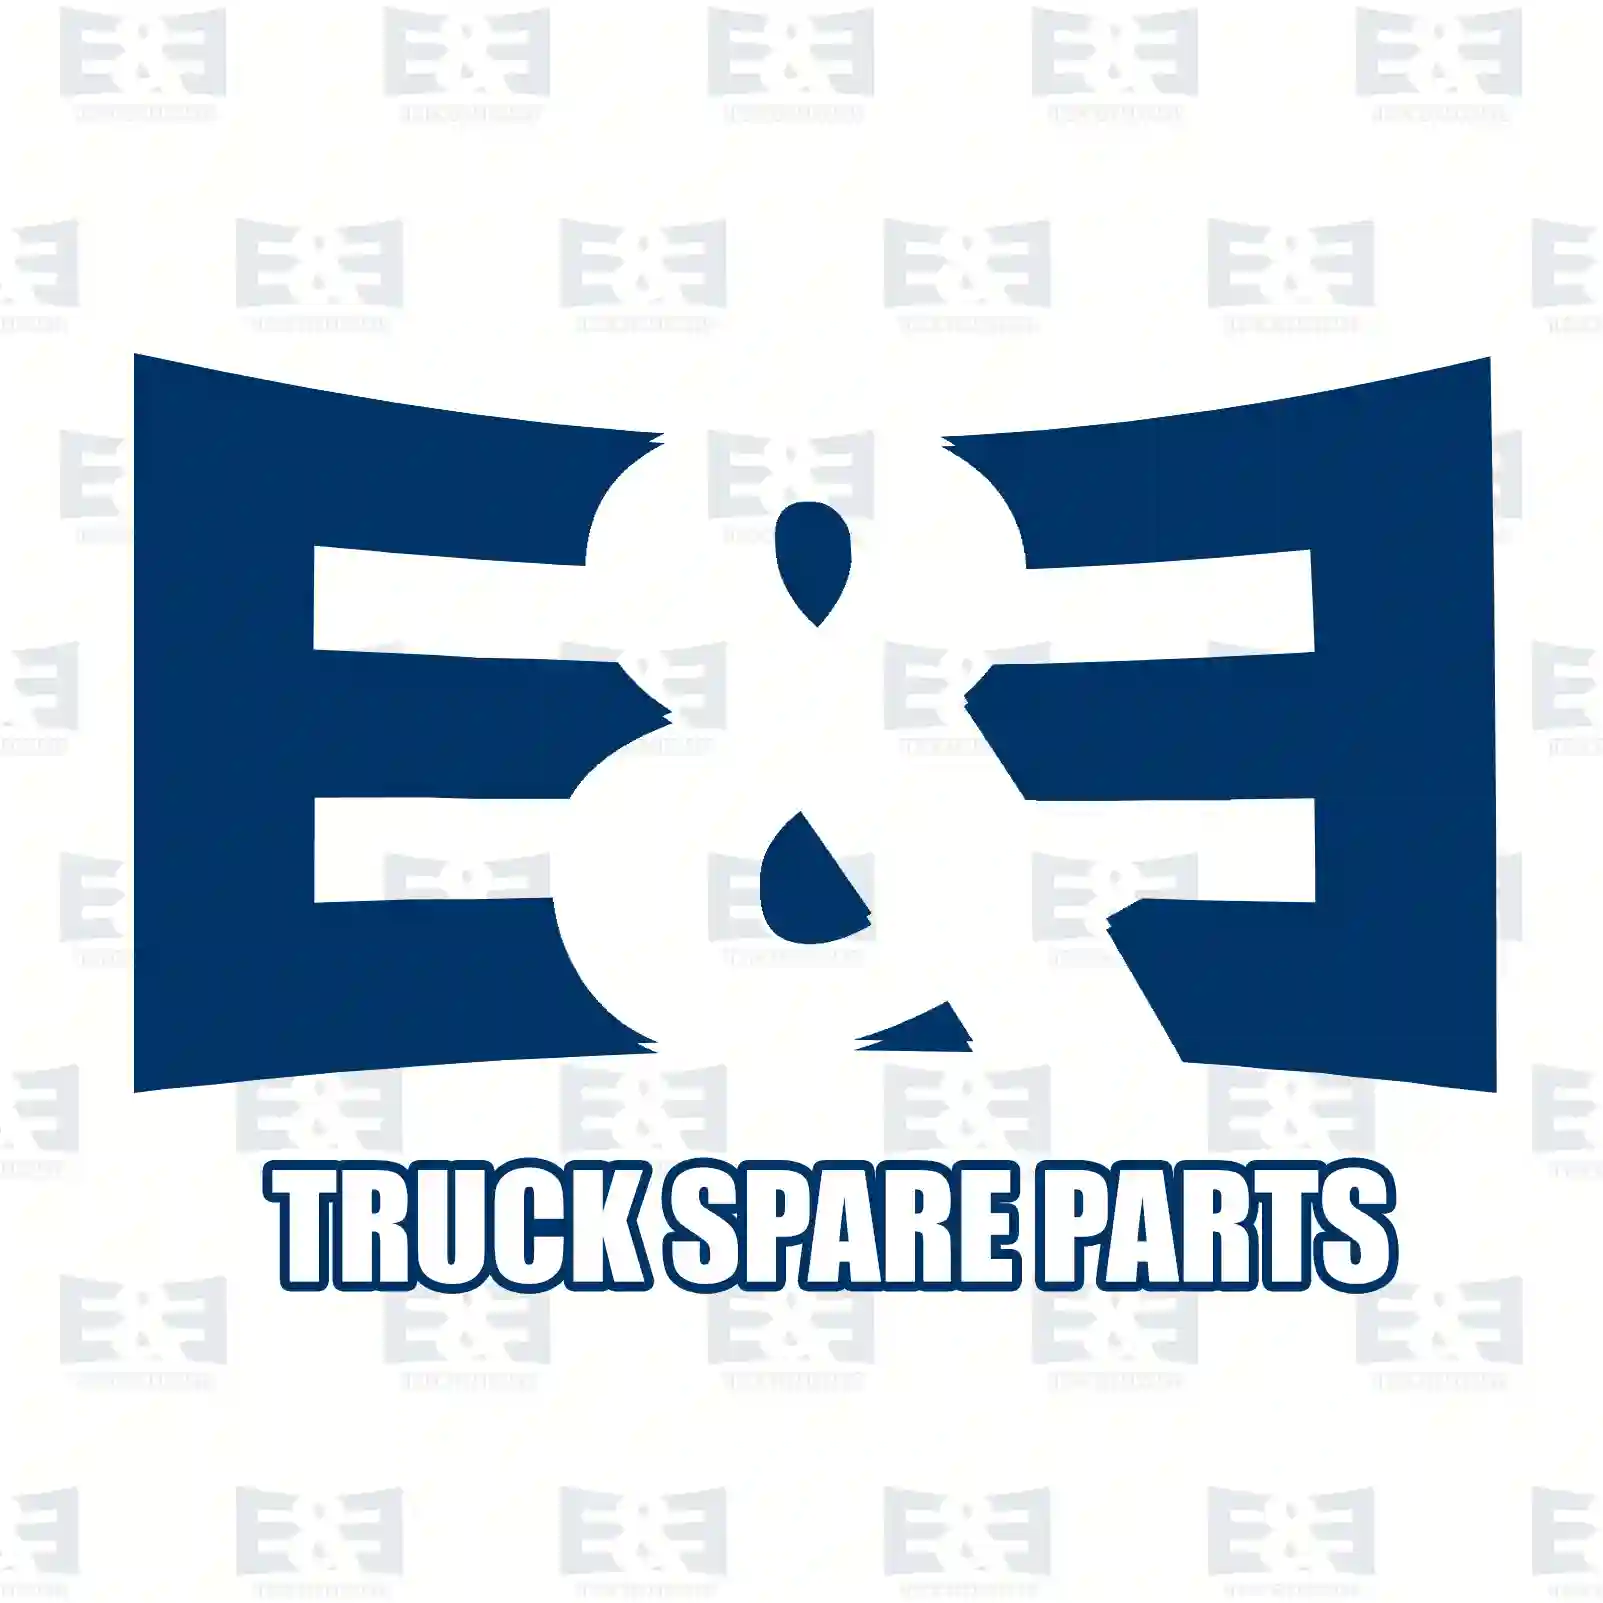 Brake disc, 2E2294256, 9111045, 43206-00QAA, 77003-14107, 4403045, 5001875375, 7700314107, , , ||  2E2294256 E&E Truck Spare Parts | Truck Spare Parts, Auotomotive Spare Parts Brake disc, 2E2294256, 9111045, 43206-00QAA, 77003-14107, 4403045, 5001875375, 7700314107, , , ||  2E2294256 E&E Truck Spare Parts | Truck Spare Parts, Auotomotive Spare Parts